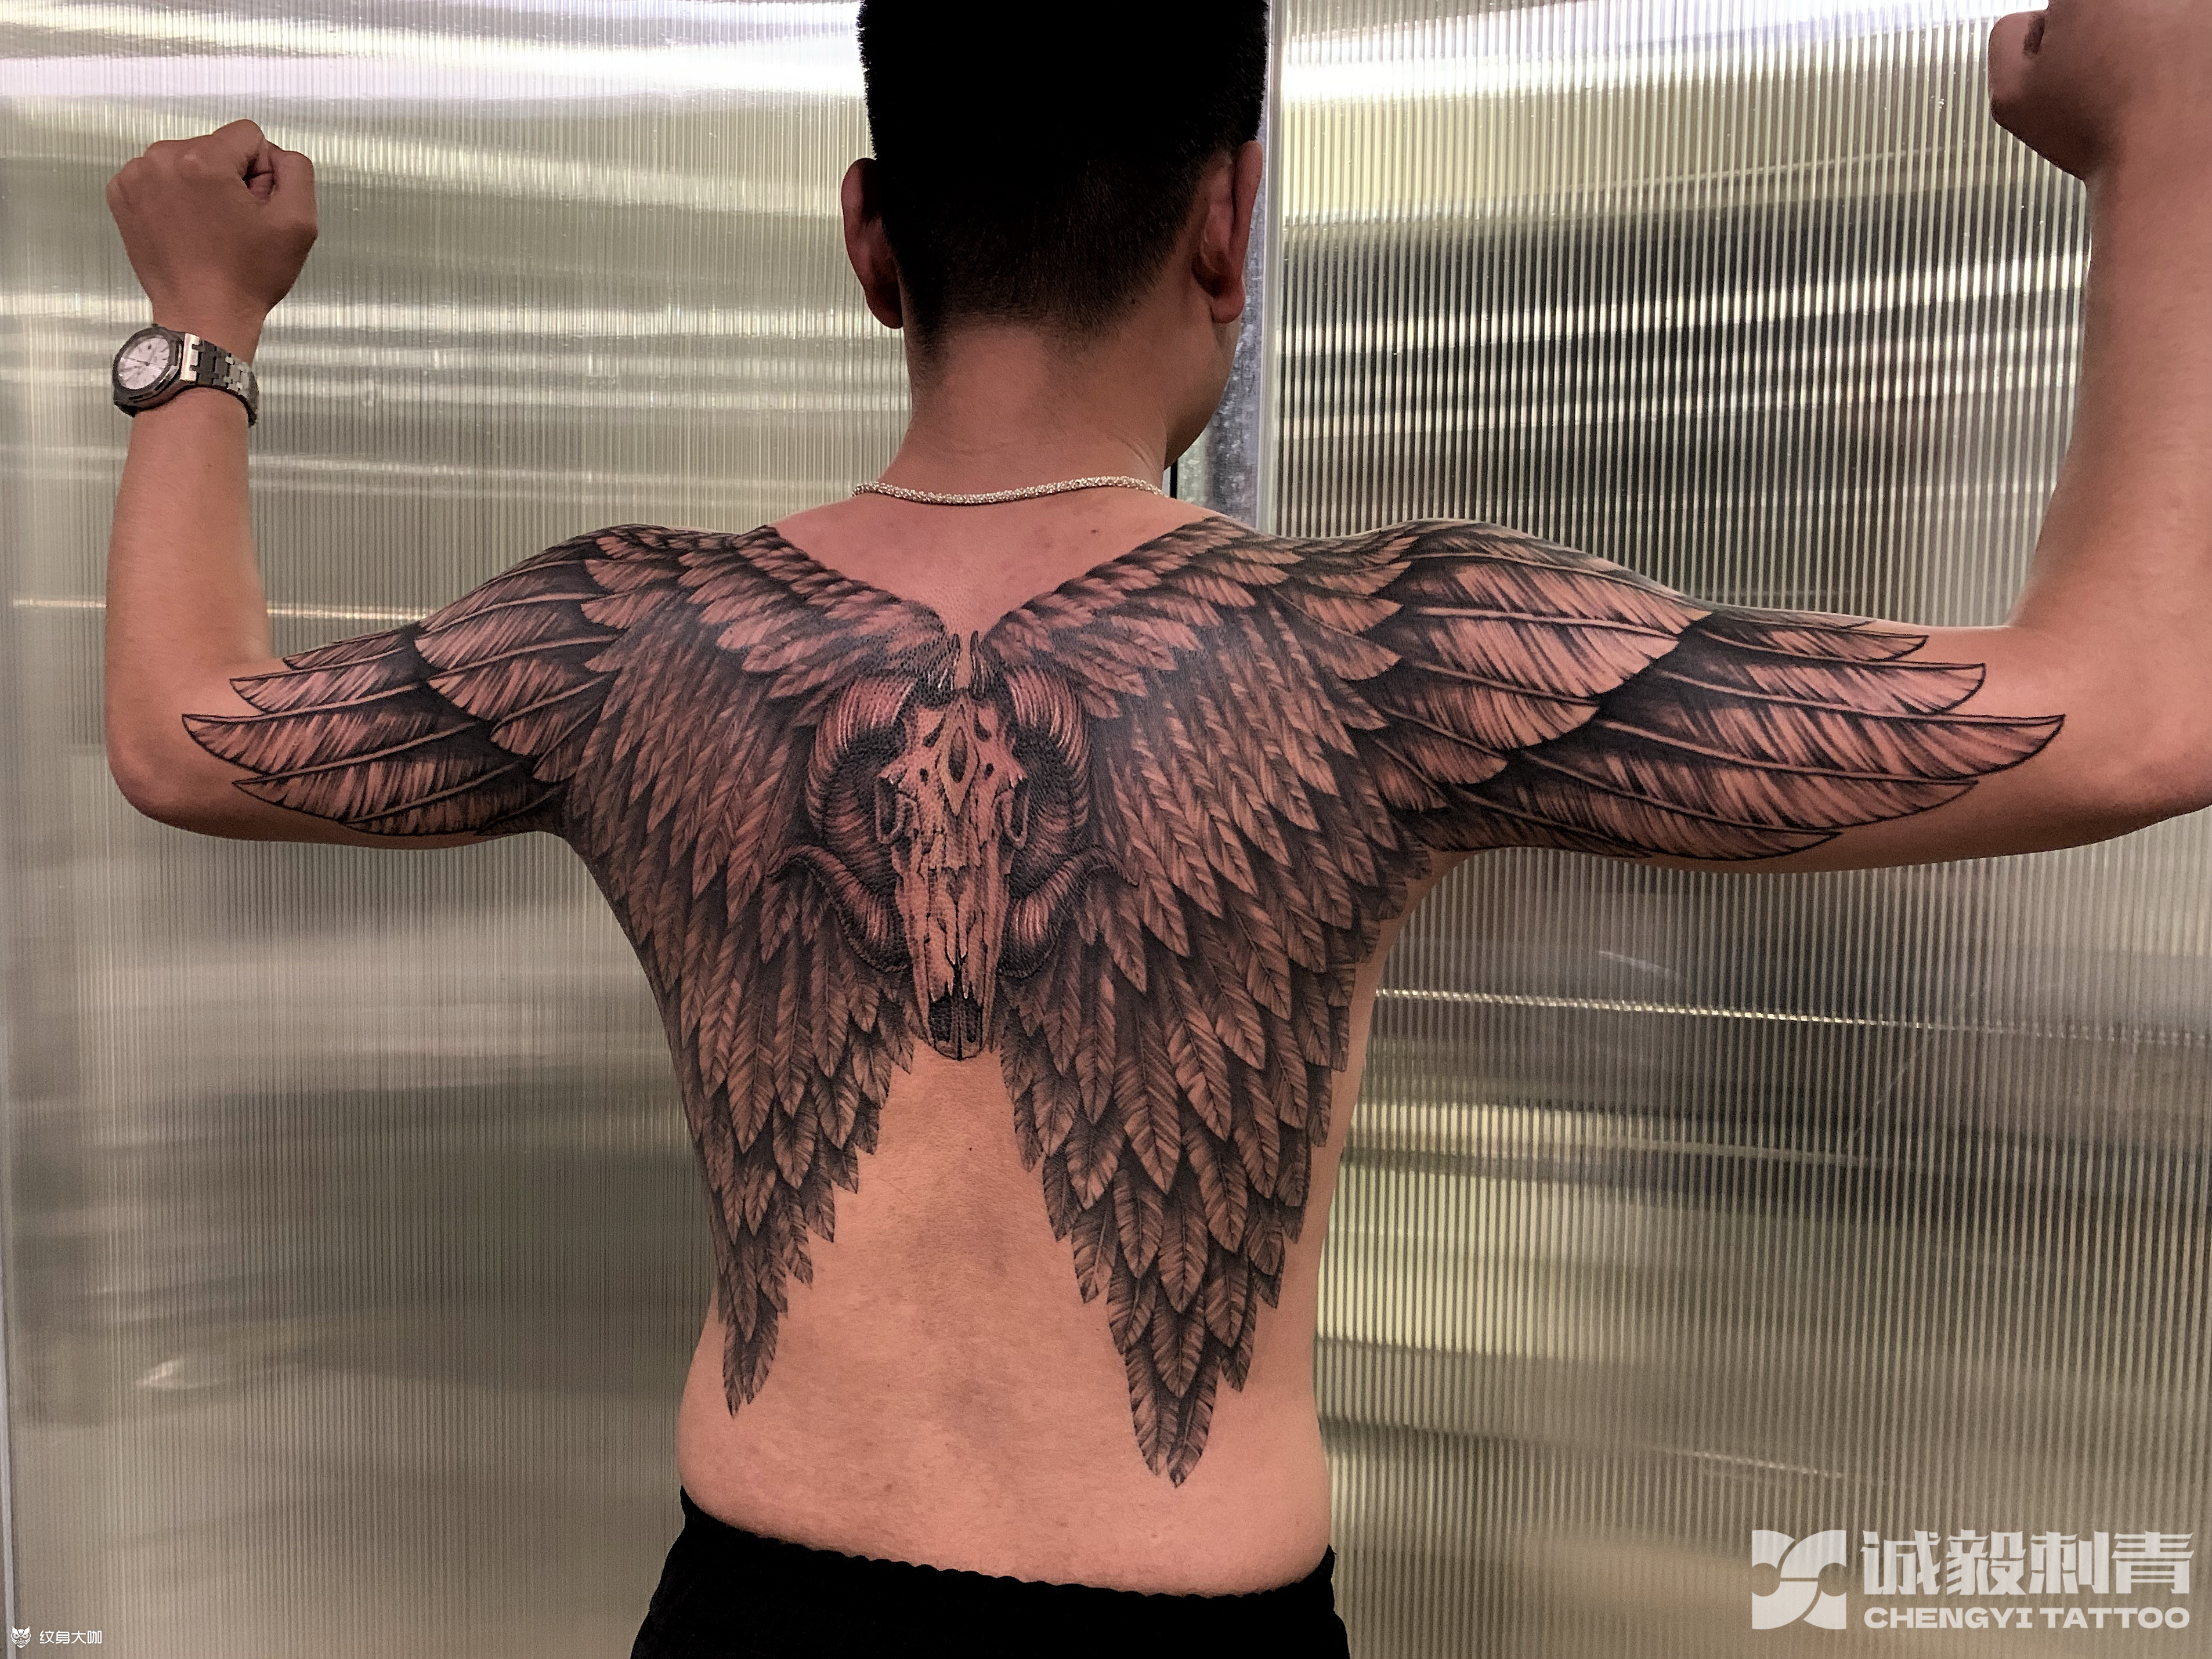 马先生后背的天使魔鬼翅膀双拼纹身图案-上海纹彩刺青